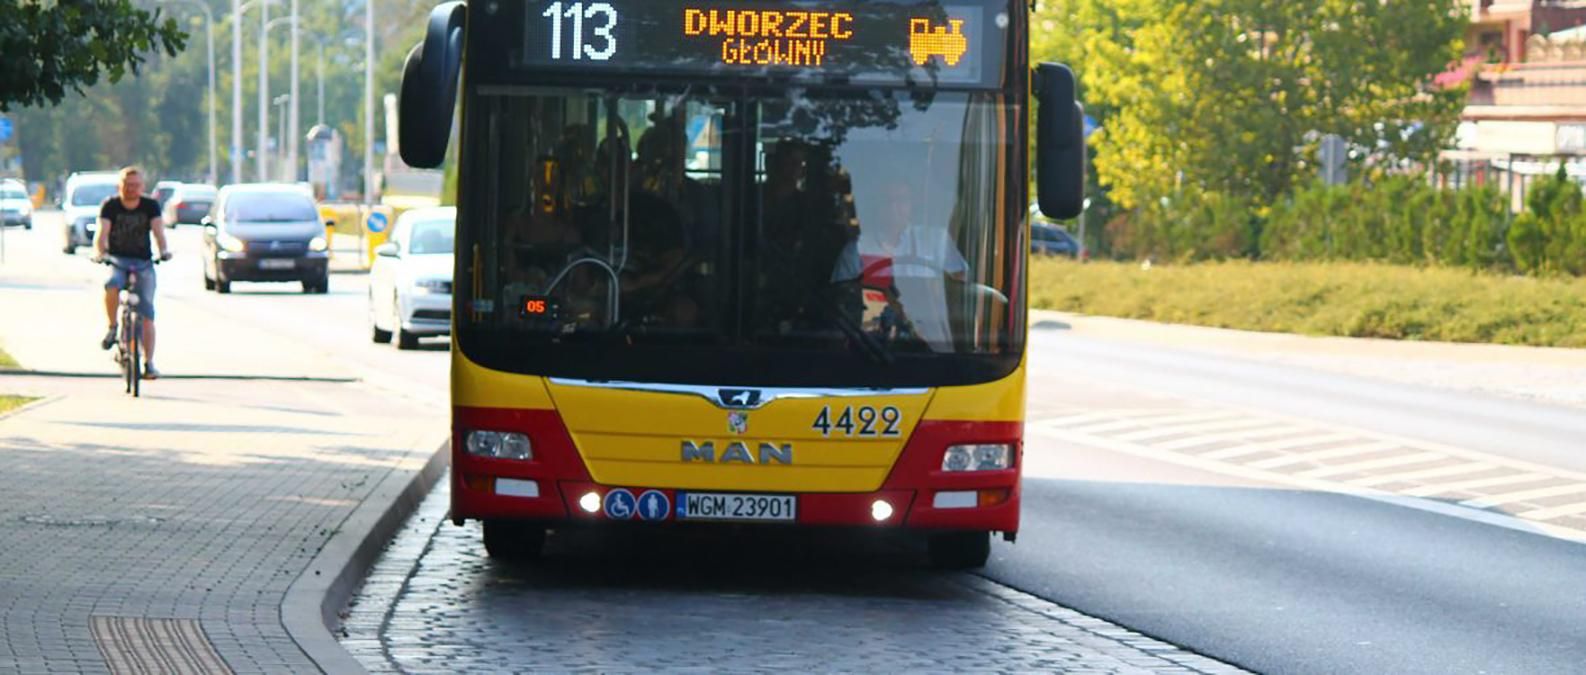 З липня у Вроцлаві знизяться ціни на квитки громадського транспорту